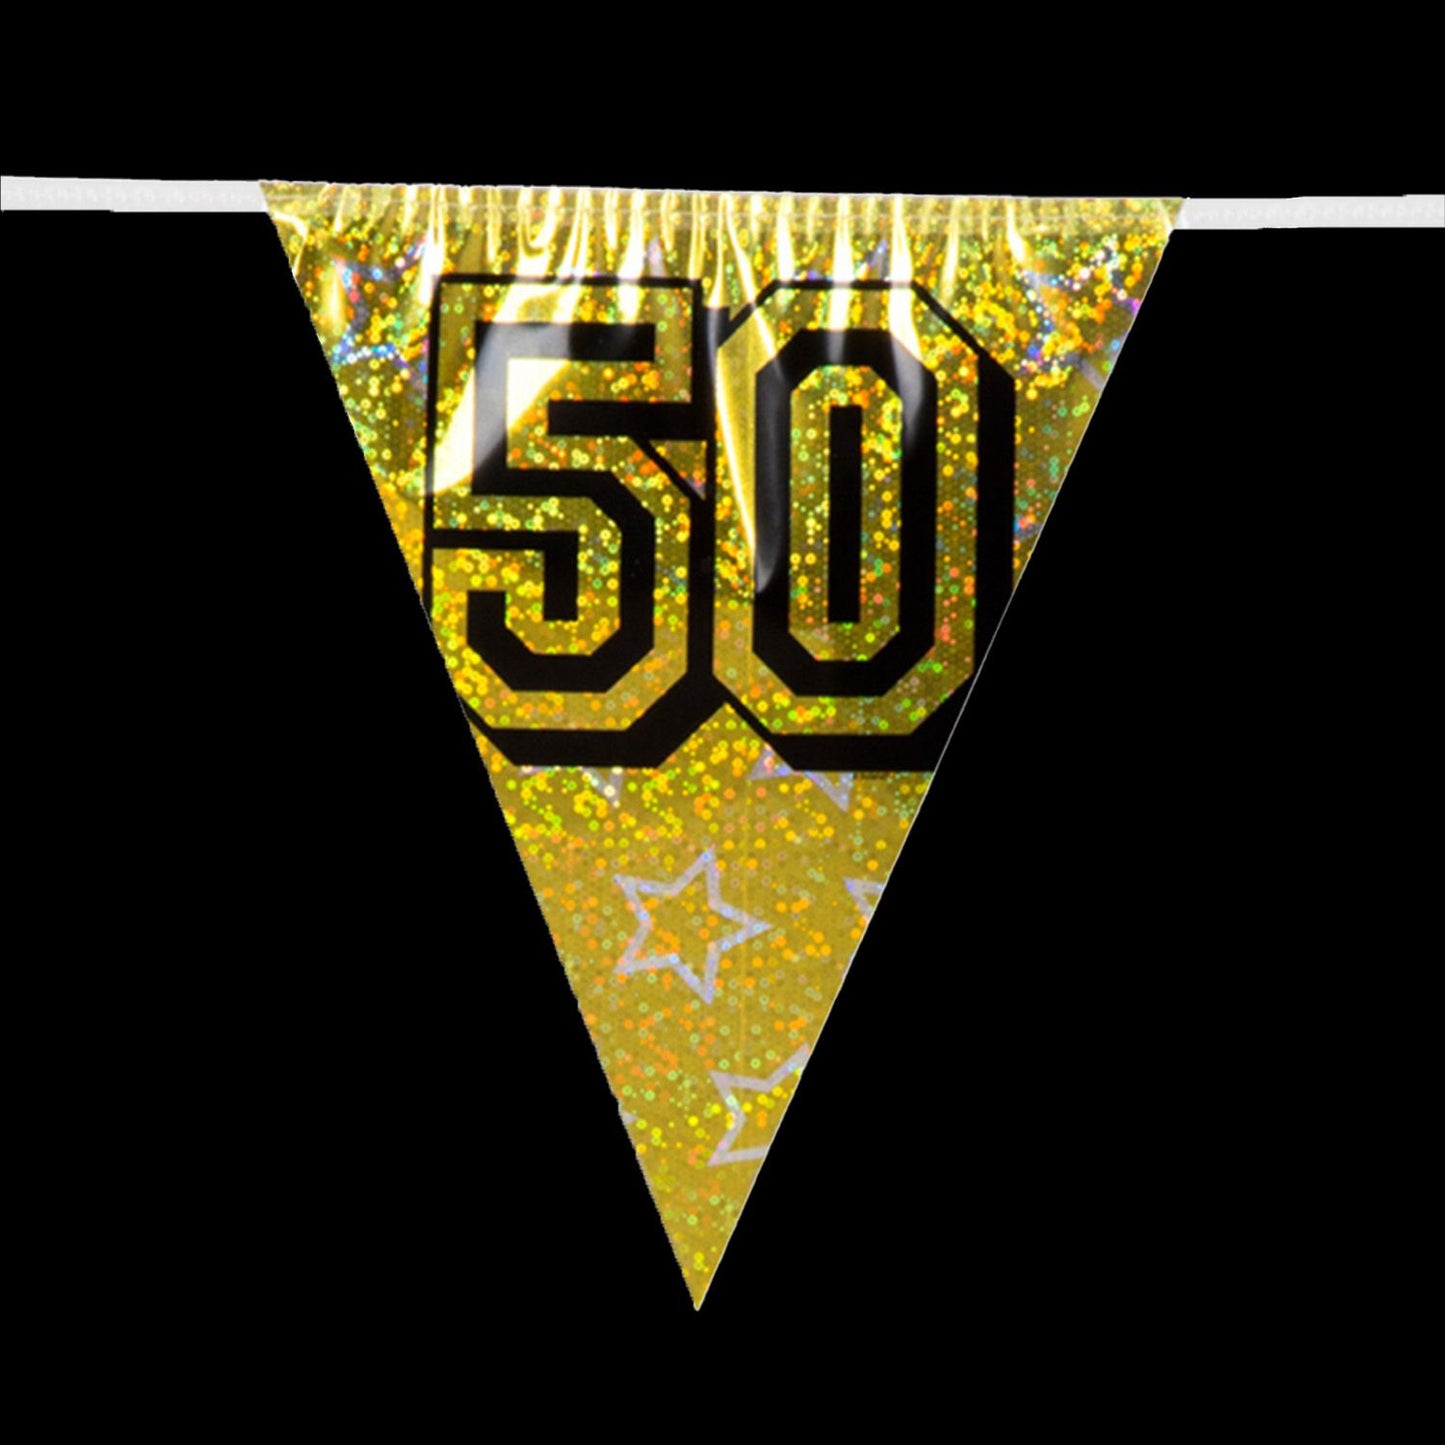 Holografische vlaggenlijn - 50 jaar